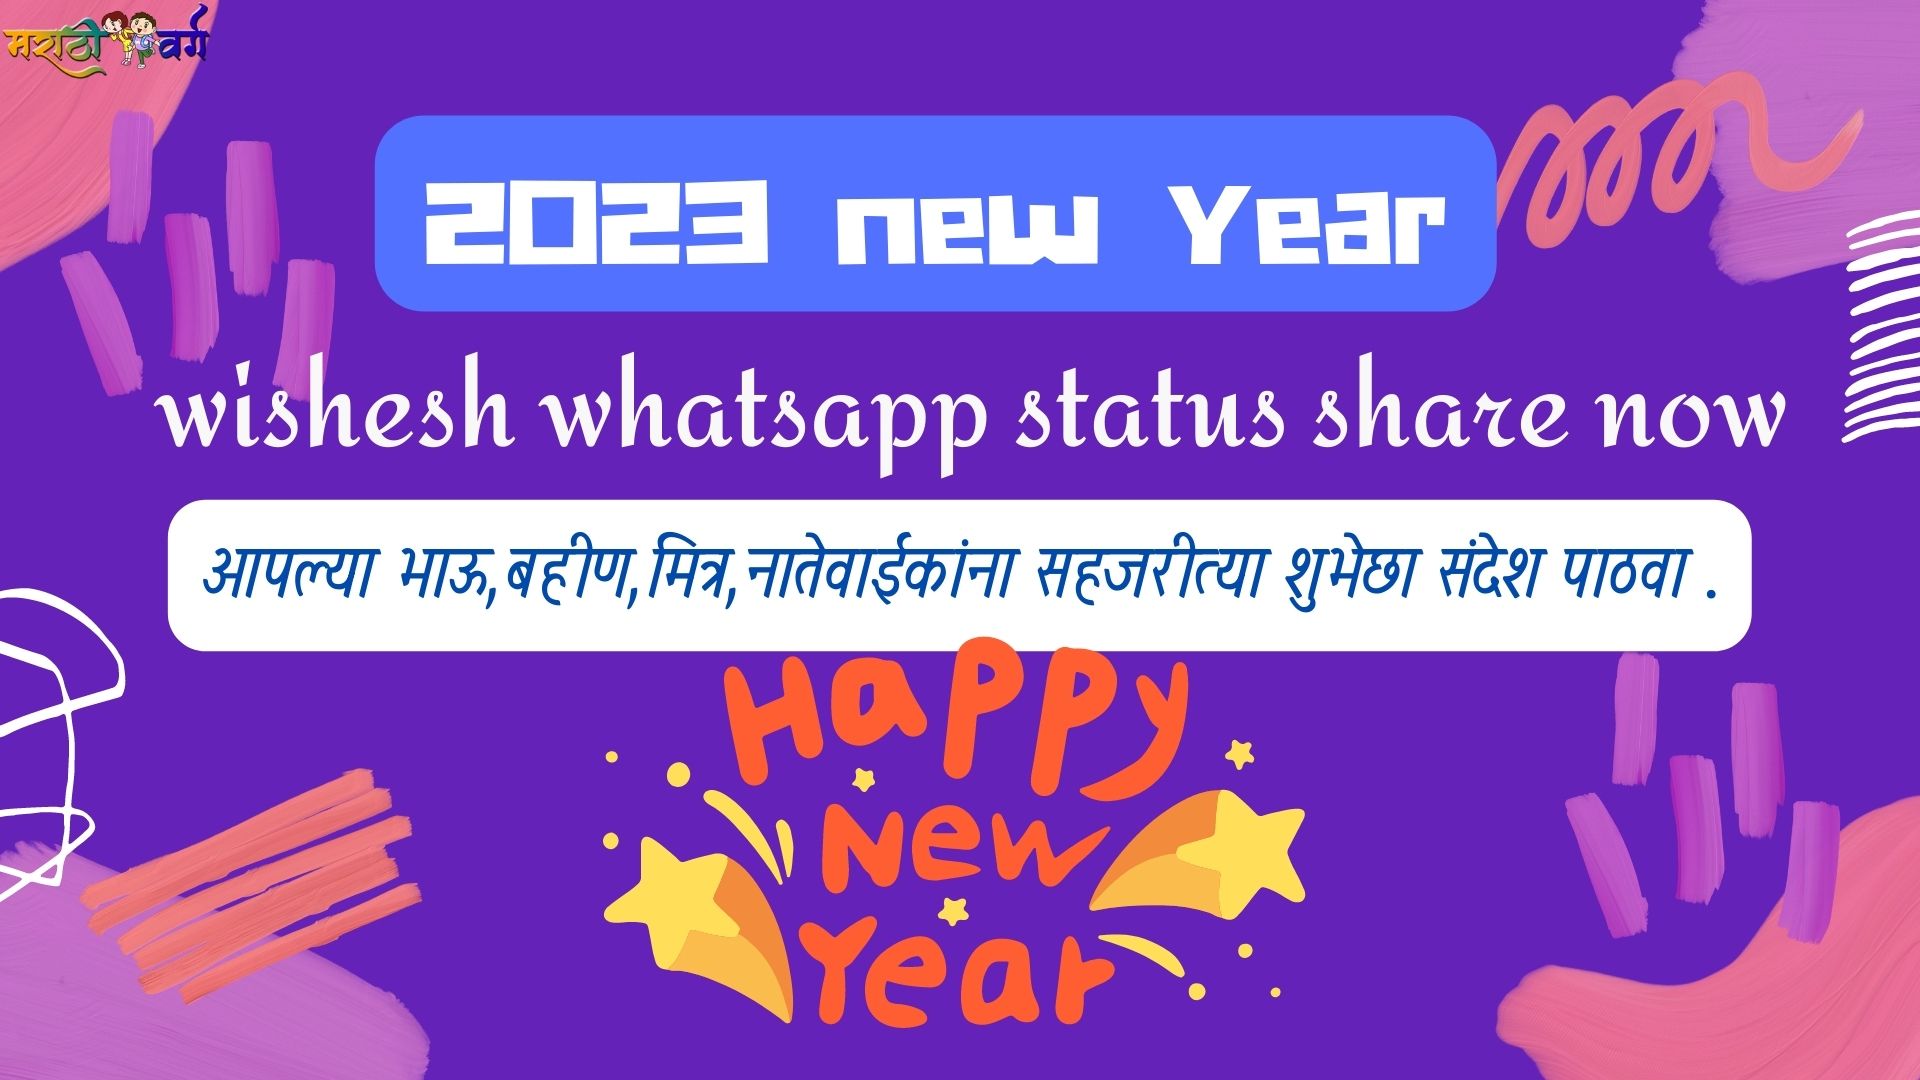 2023 new year wishes whatsapp status share now